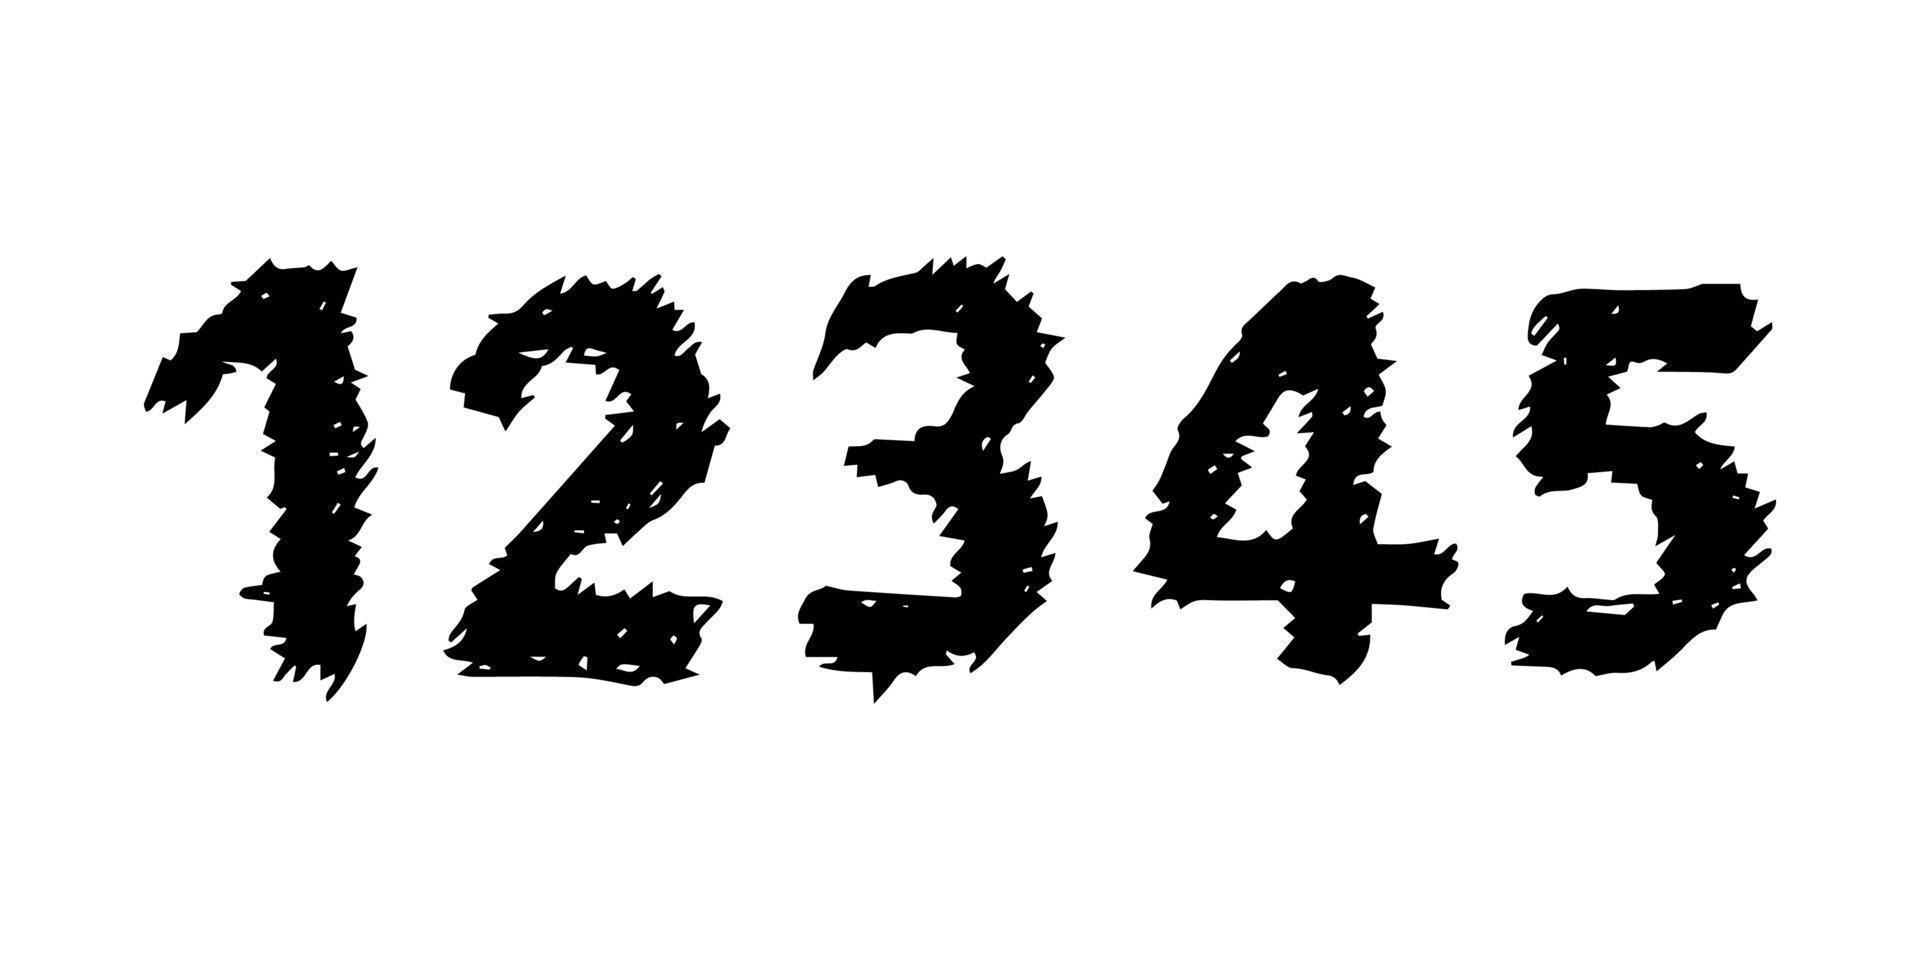 handgezeichnete zahlen 12345. moderne schrift und schrift in großbuchstaben. schwarze Symbole auf weißem Hintergrund. Vektor-Illustration. vektor